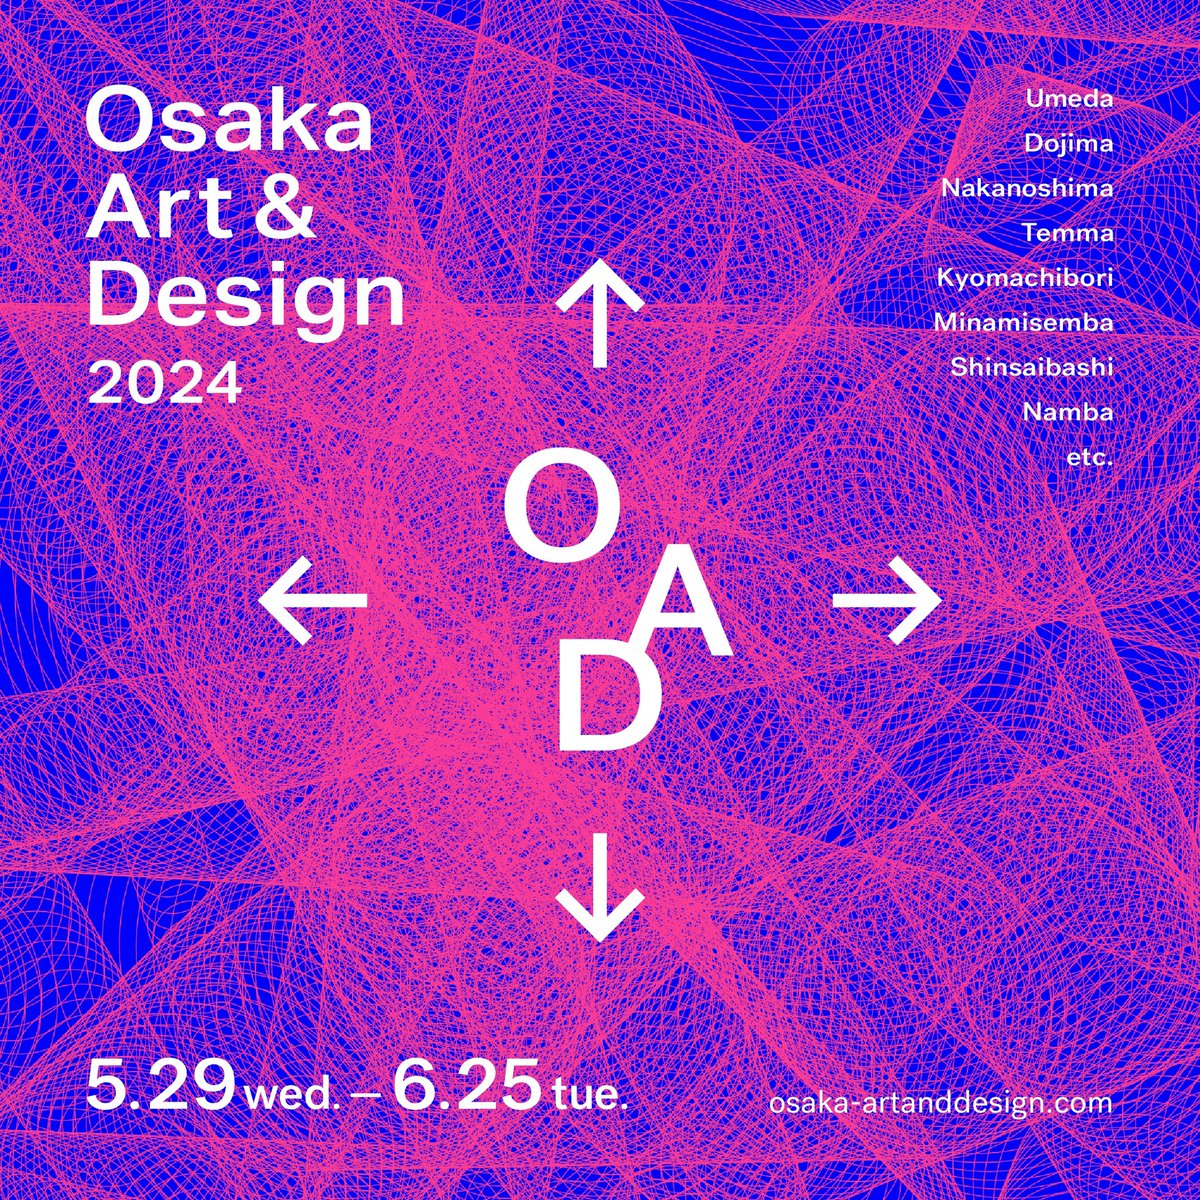 5/29より始まったOsaka Art & Design 2024のキービジュアルのアートディレクション・デザインを担当しました。

6/25まで、主に梅田からなんばにかけて約50カ所のギャラリー・ショップ・百貨店などで開催されています。
ぜひぜひ。

osaka-artanddesign.com